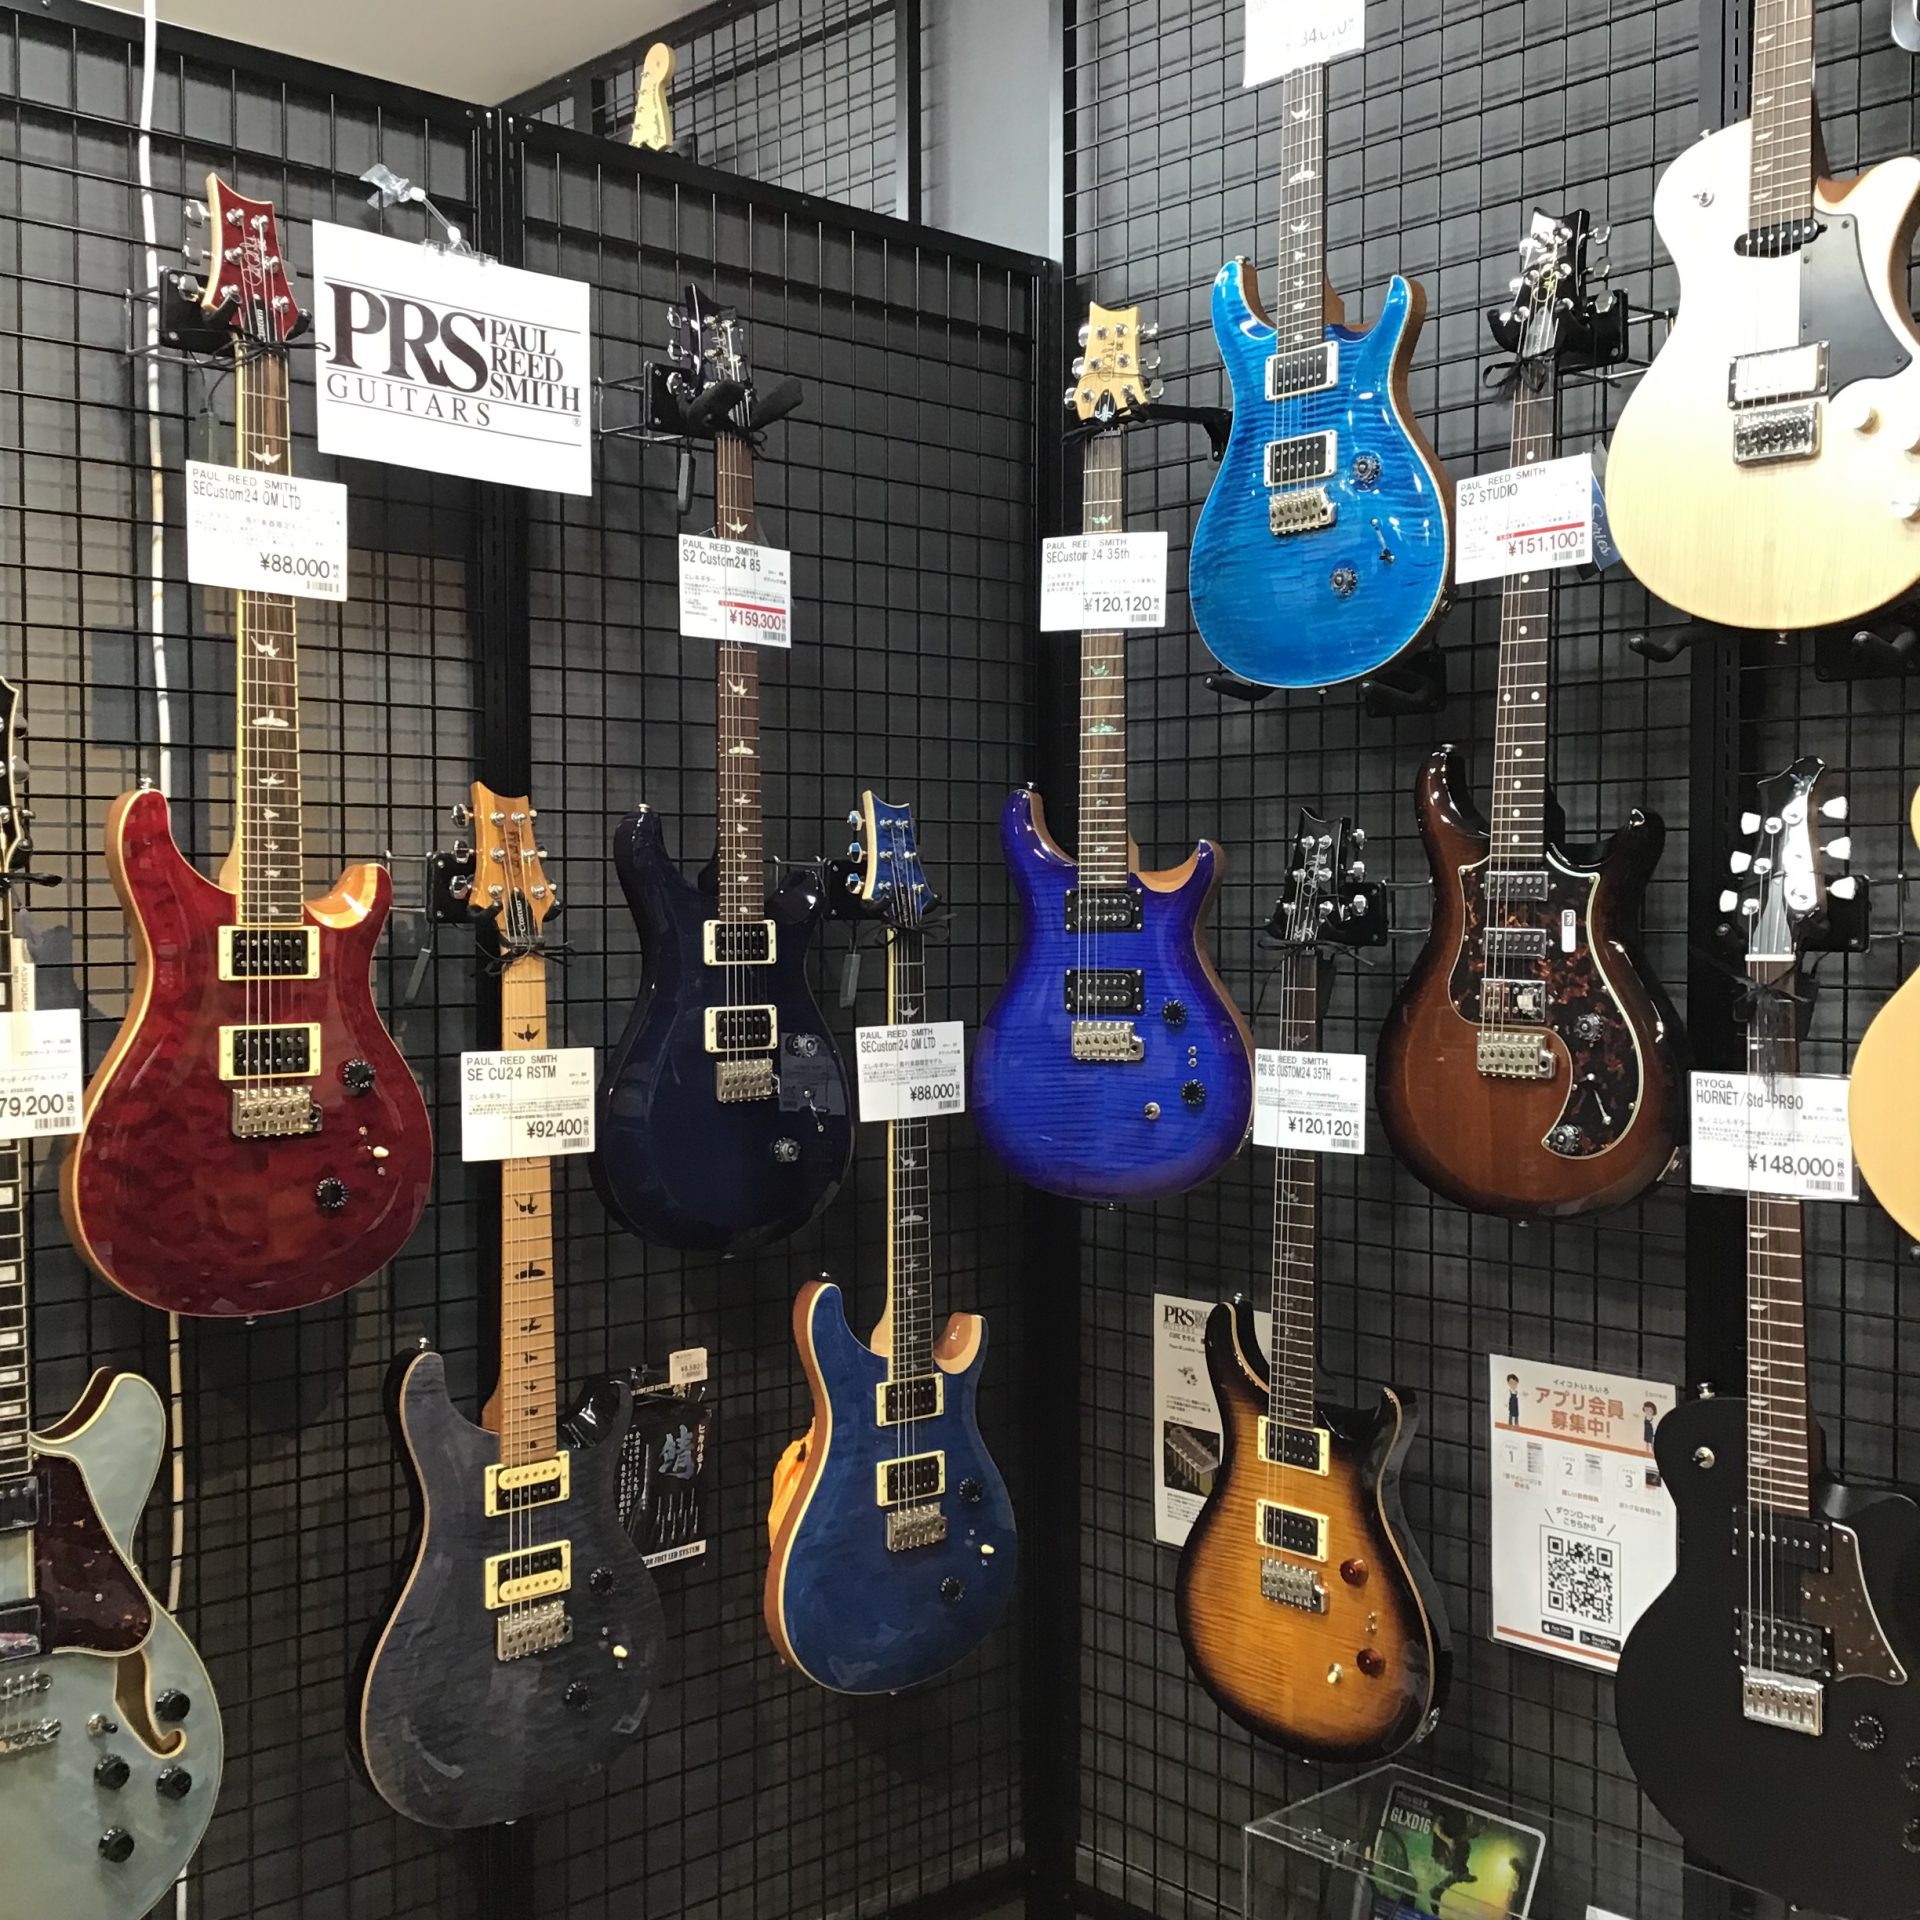 *PAUL REED SMITHのギター揃っています！ Custom24からS2、SEまで豊富に揃っています店頭では実際にお試しいただけます。 ぜひお気軽にご来店ください！ 今回はステラプレイスのイメージカラーでもあるブルー系のギターを2本ご紹介します。 |*ブランド|*型名|*定価(税込)|*販売 […]